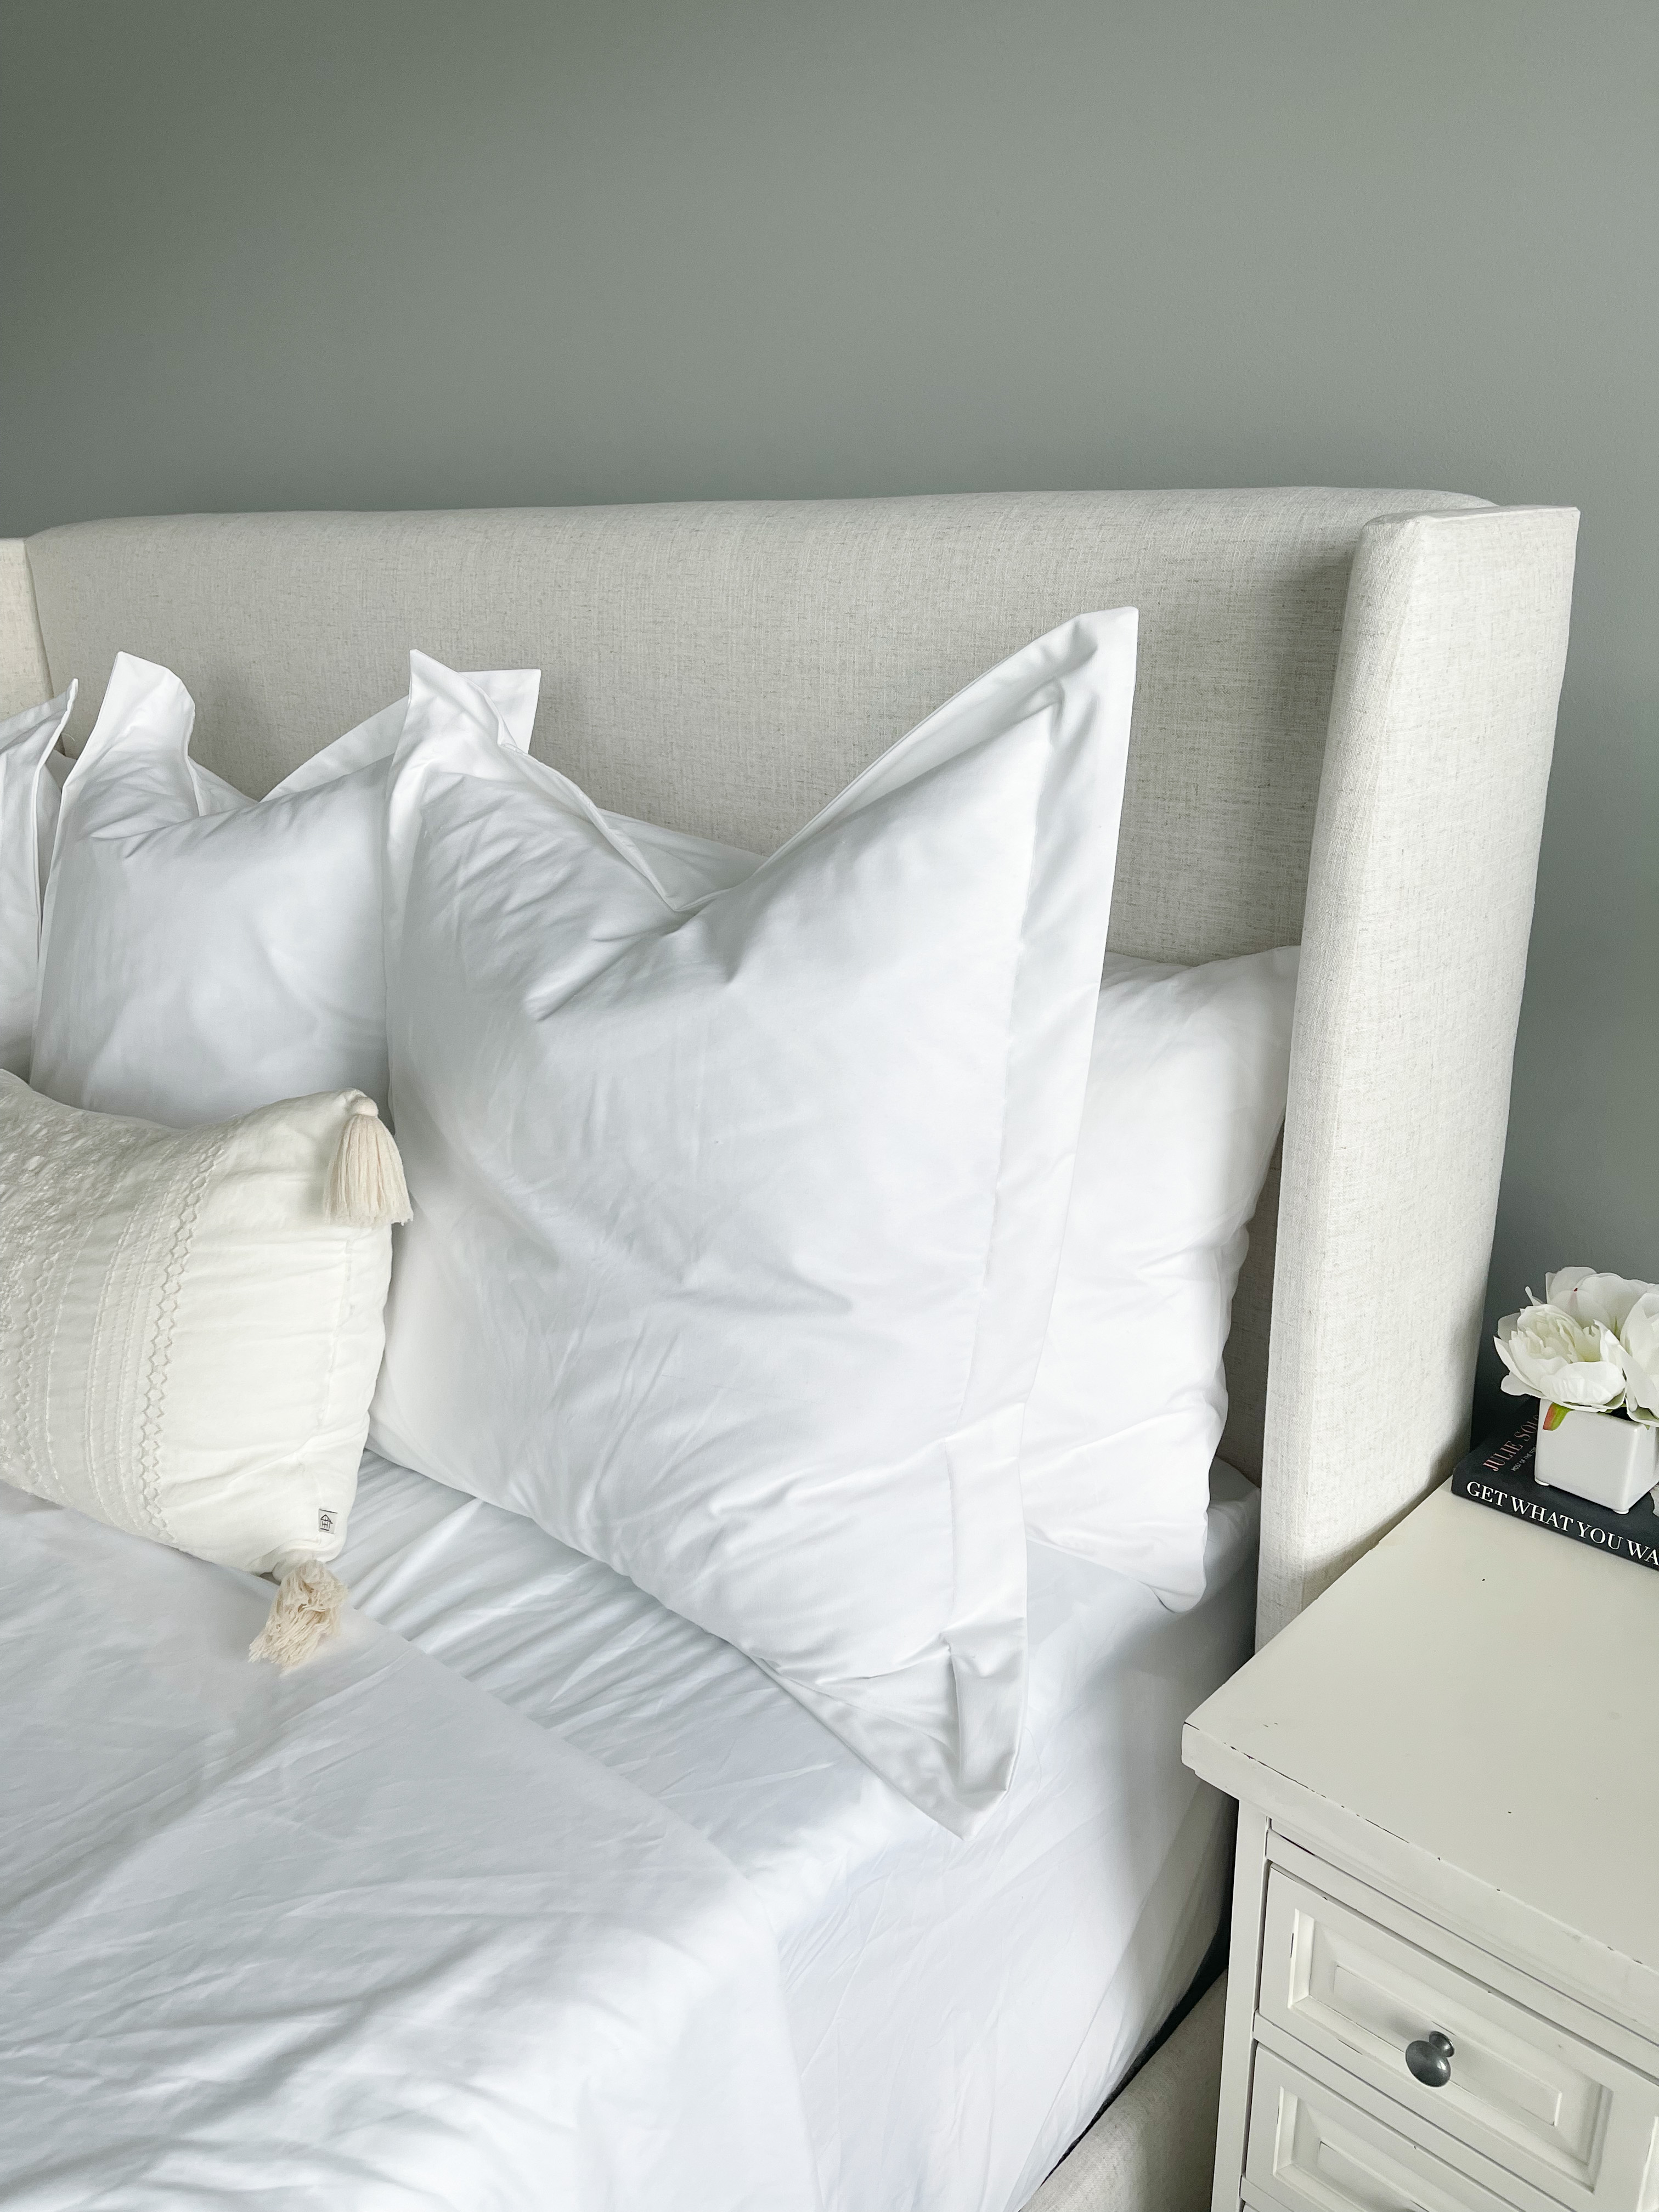 White Euro pillows from Amazon 